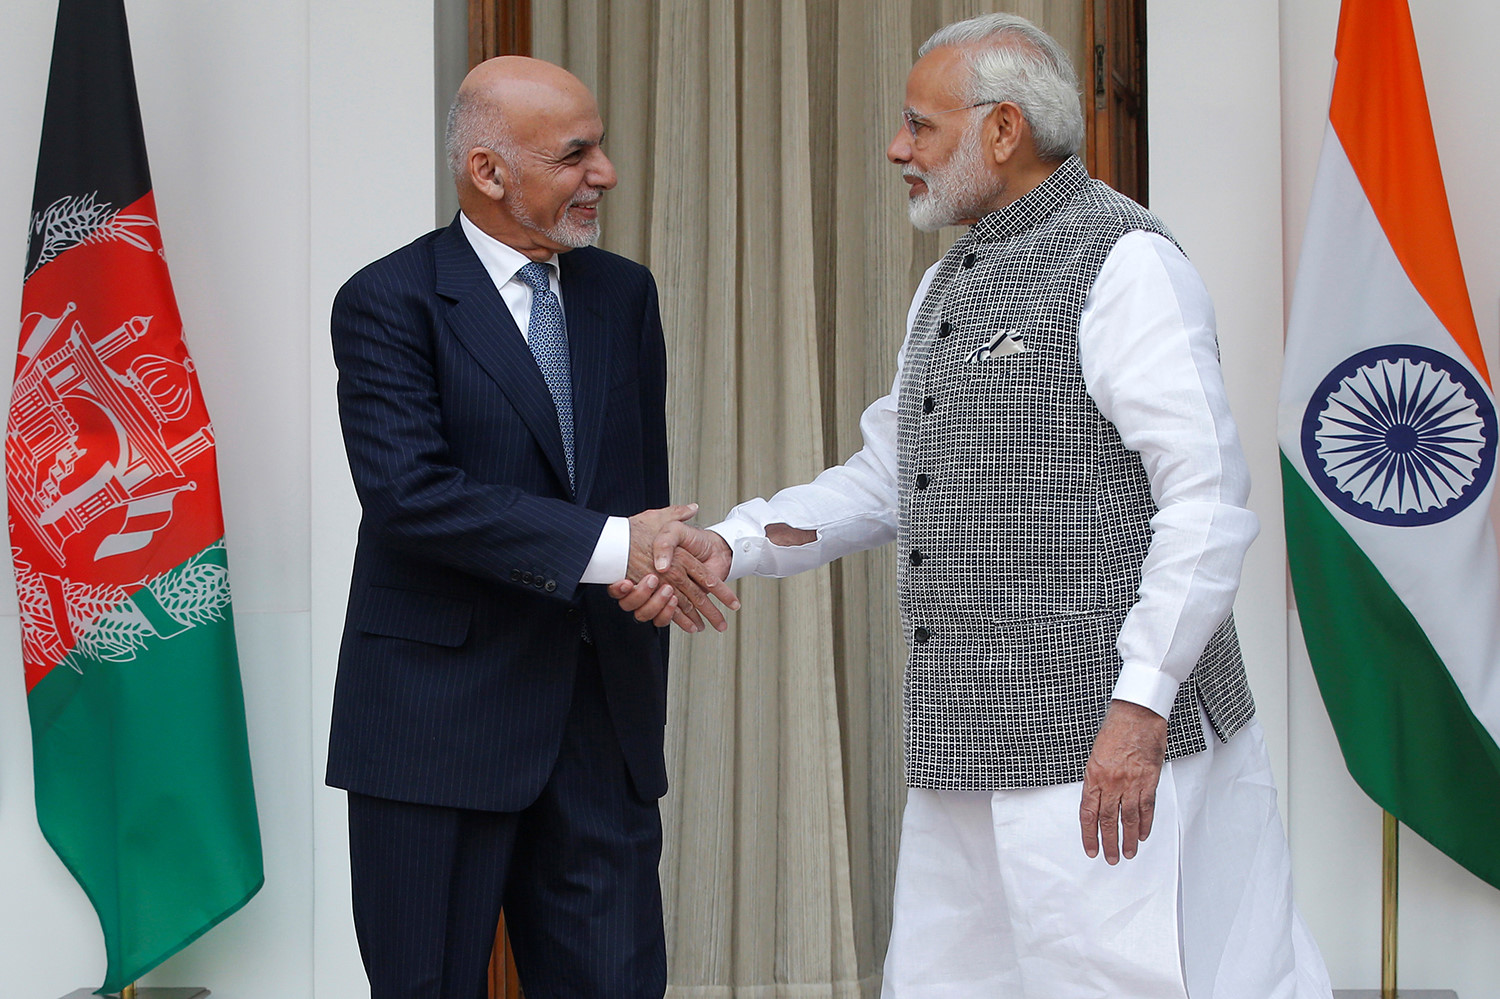 (Afganistan Cumhurbaşkanı Eşref Gani Ahmedzay (solda) ve Hindistan Başbakanı Narendra Modi (sağda)) Pakistan yetkilileri, Hindistan’ın Afganistan barış sürecine katılmasını bölgesel huzur ve güvenliğe herhangi bir katkısı olmayan, aksine olumsuz etki eden bir gelişme olarak değerlendiriyor. 